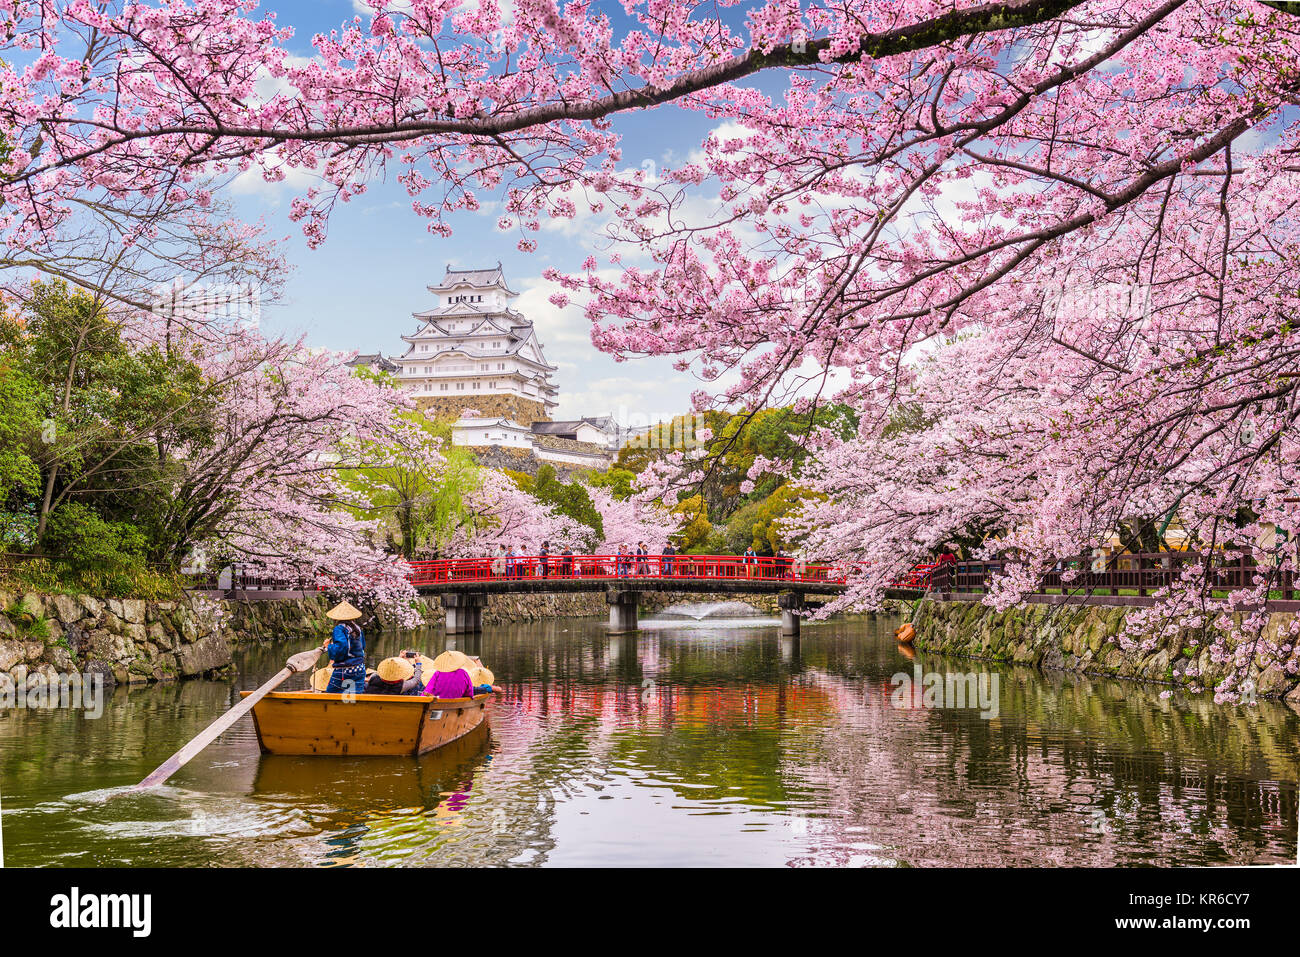 Himeji, Japan at Himeji Castle in spring season. Stock Photo